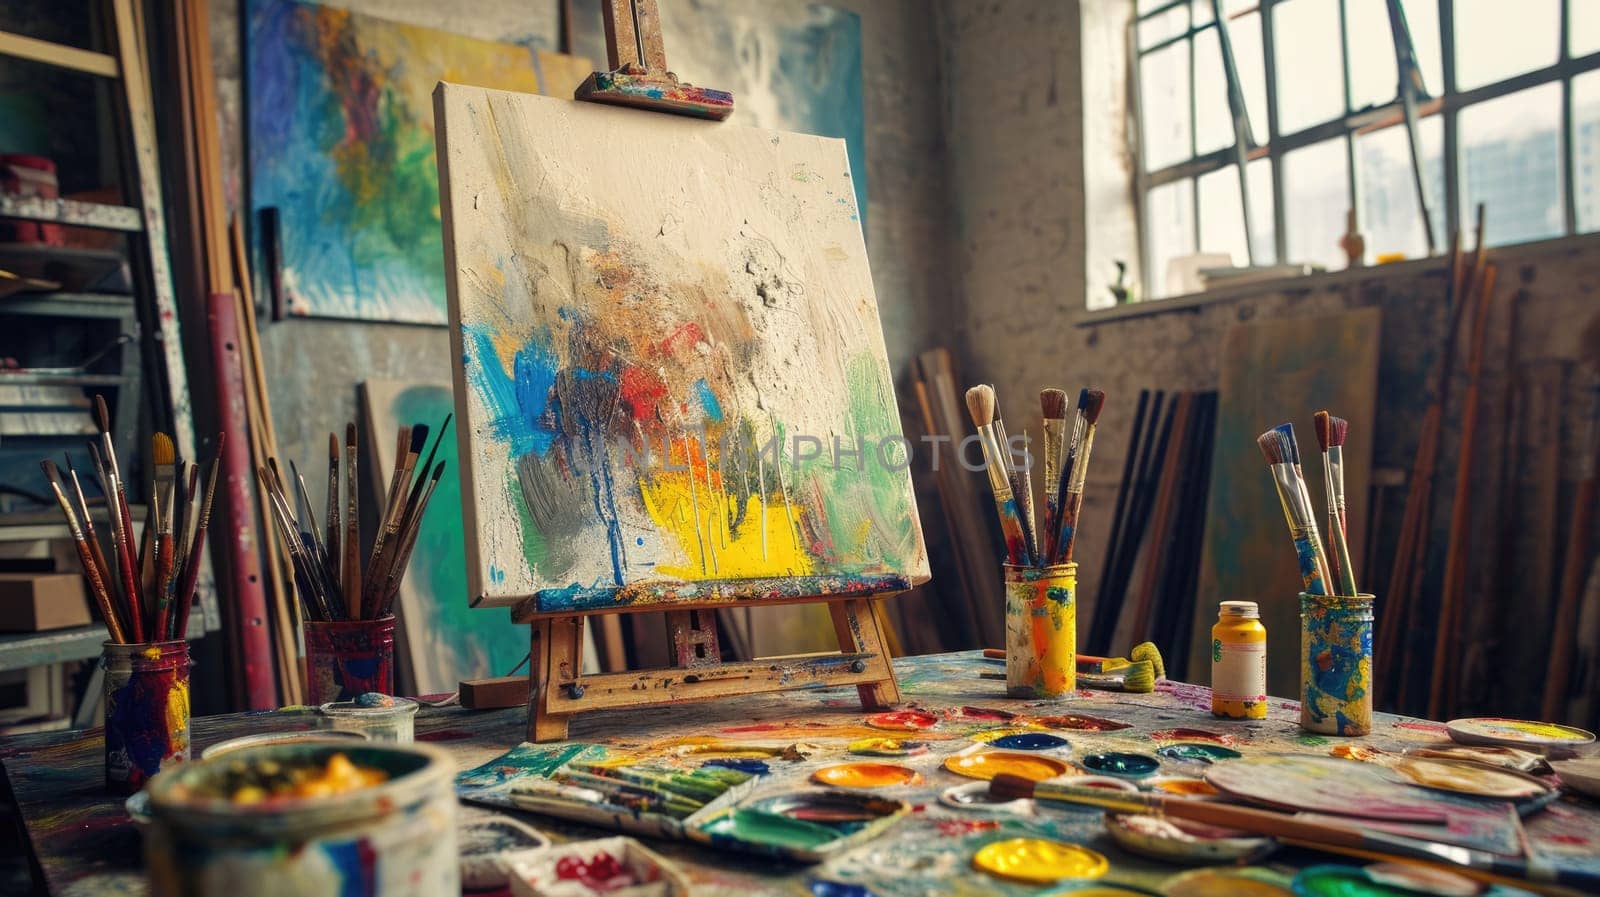 An artist's studio in full creative chaos, paint splattered. Resplendent. by biancoblue